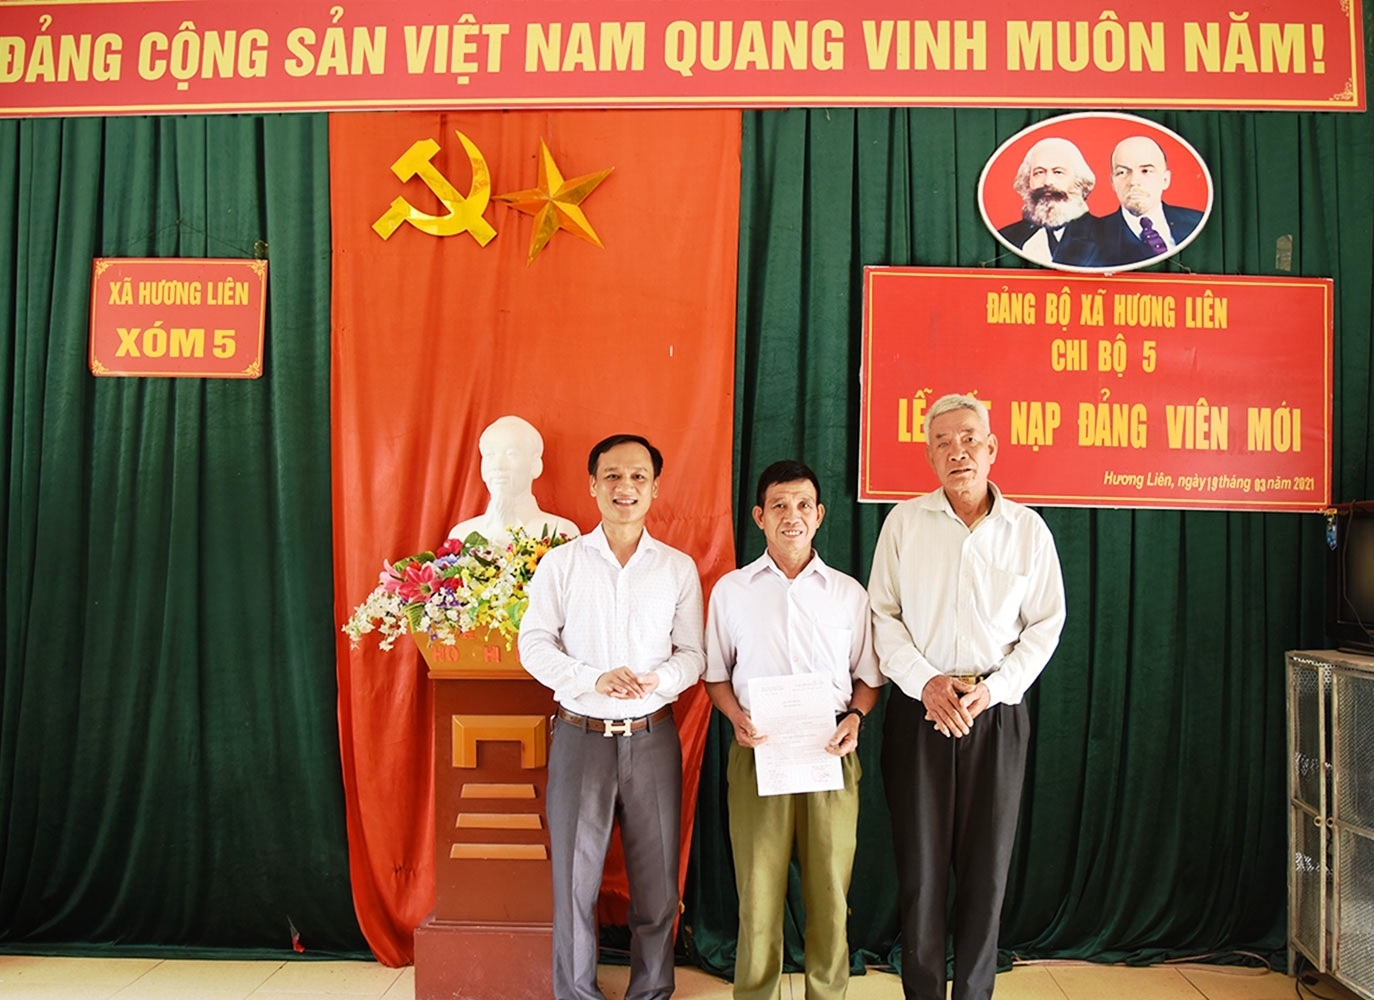 Ông Lê Đình Phiên (đứng giữa) - 62 tuổi mới vào Đảng